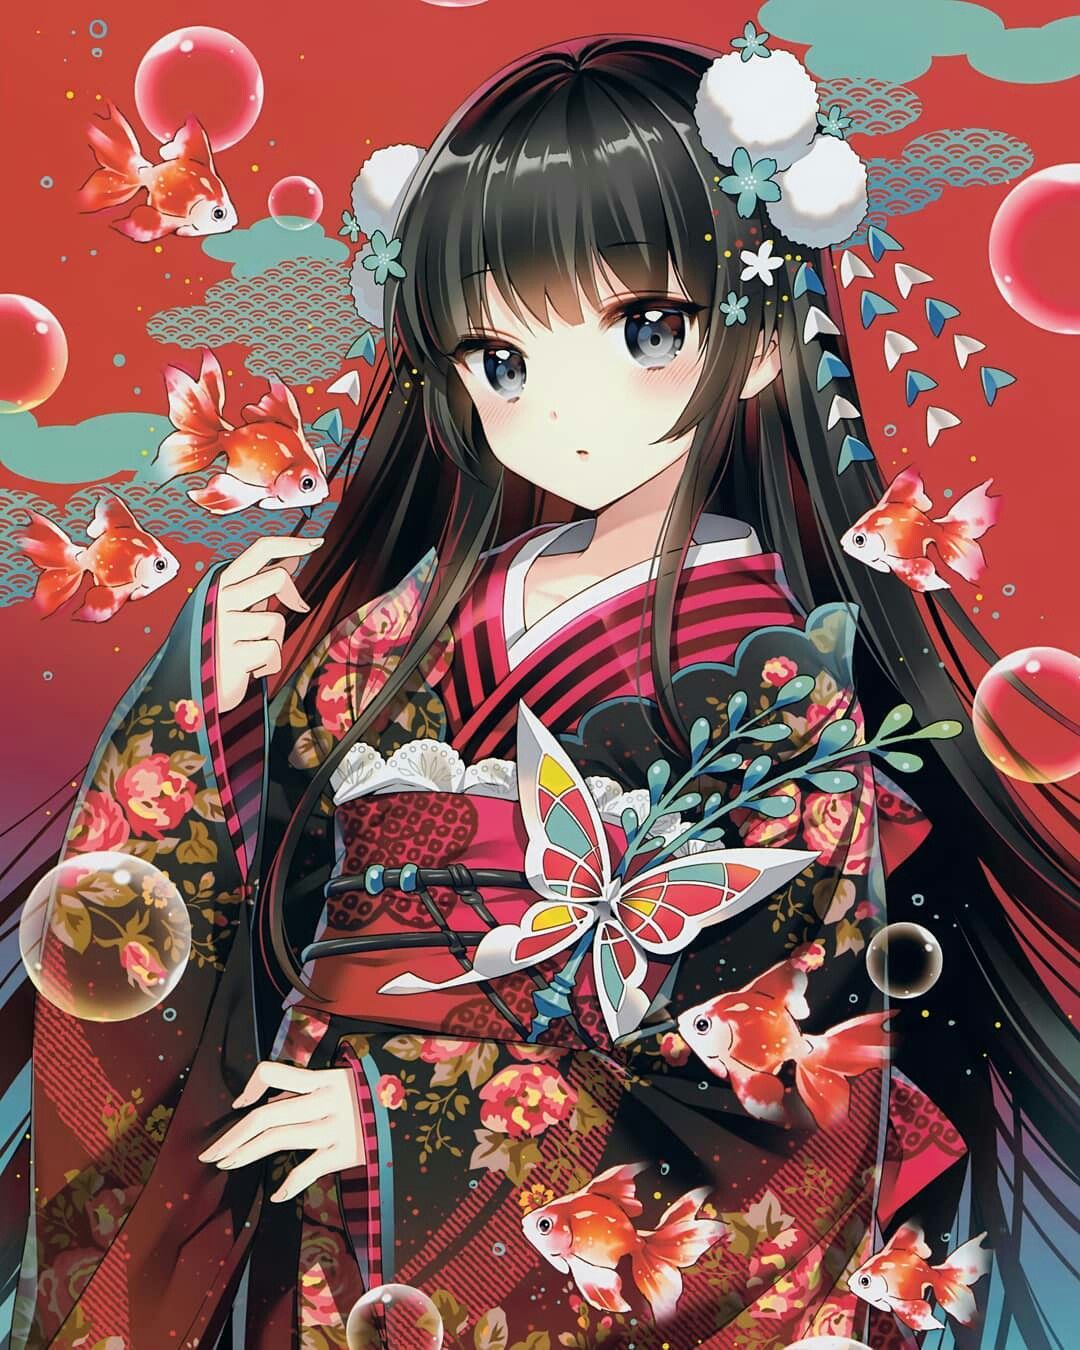 Hãy cùng khám phá vẻ đẹp cổ điển và trang nhã của nữ nhân vật anime cổ trang bằng cách nhấn vào hình ảnh ngay! Trong chiếc váy kimono truyền thống, cô nàng manga này thật sự là một biểu tượng của sắc đẹp Á Đông với tất cả các yếu tố cần có như đôi mắt to tròn, mái tóc dài và làn da trắng nõn.